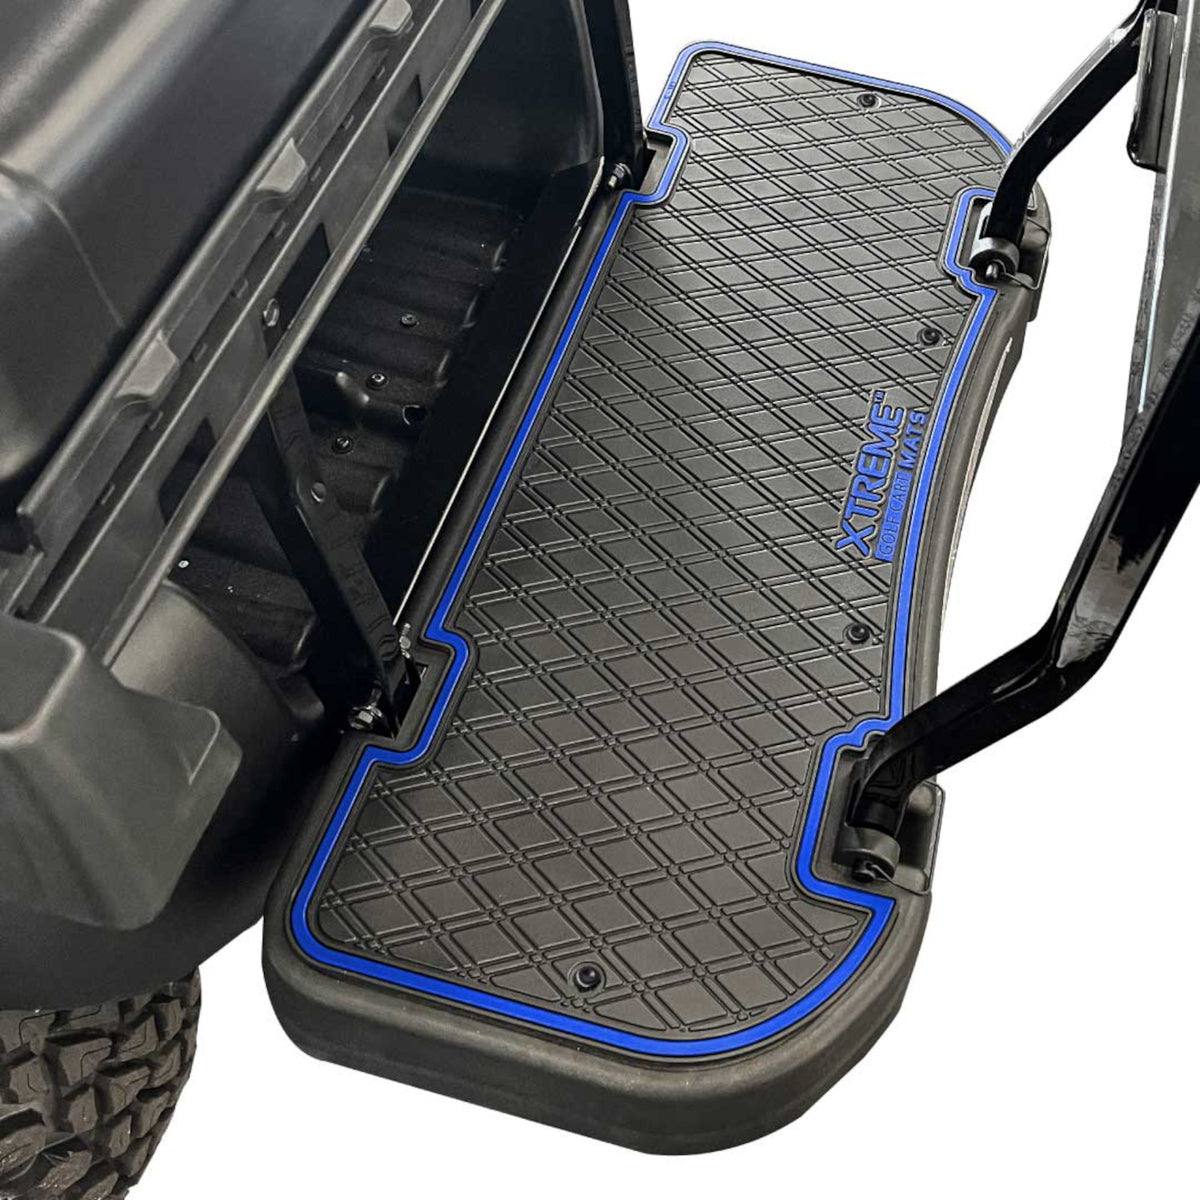 Xtreme Floor Mats for MadJax Genesis 250/300 Rear Seat Kits - Black/Blue